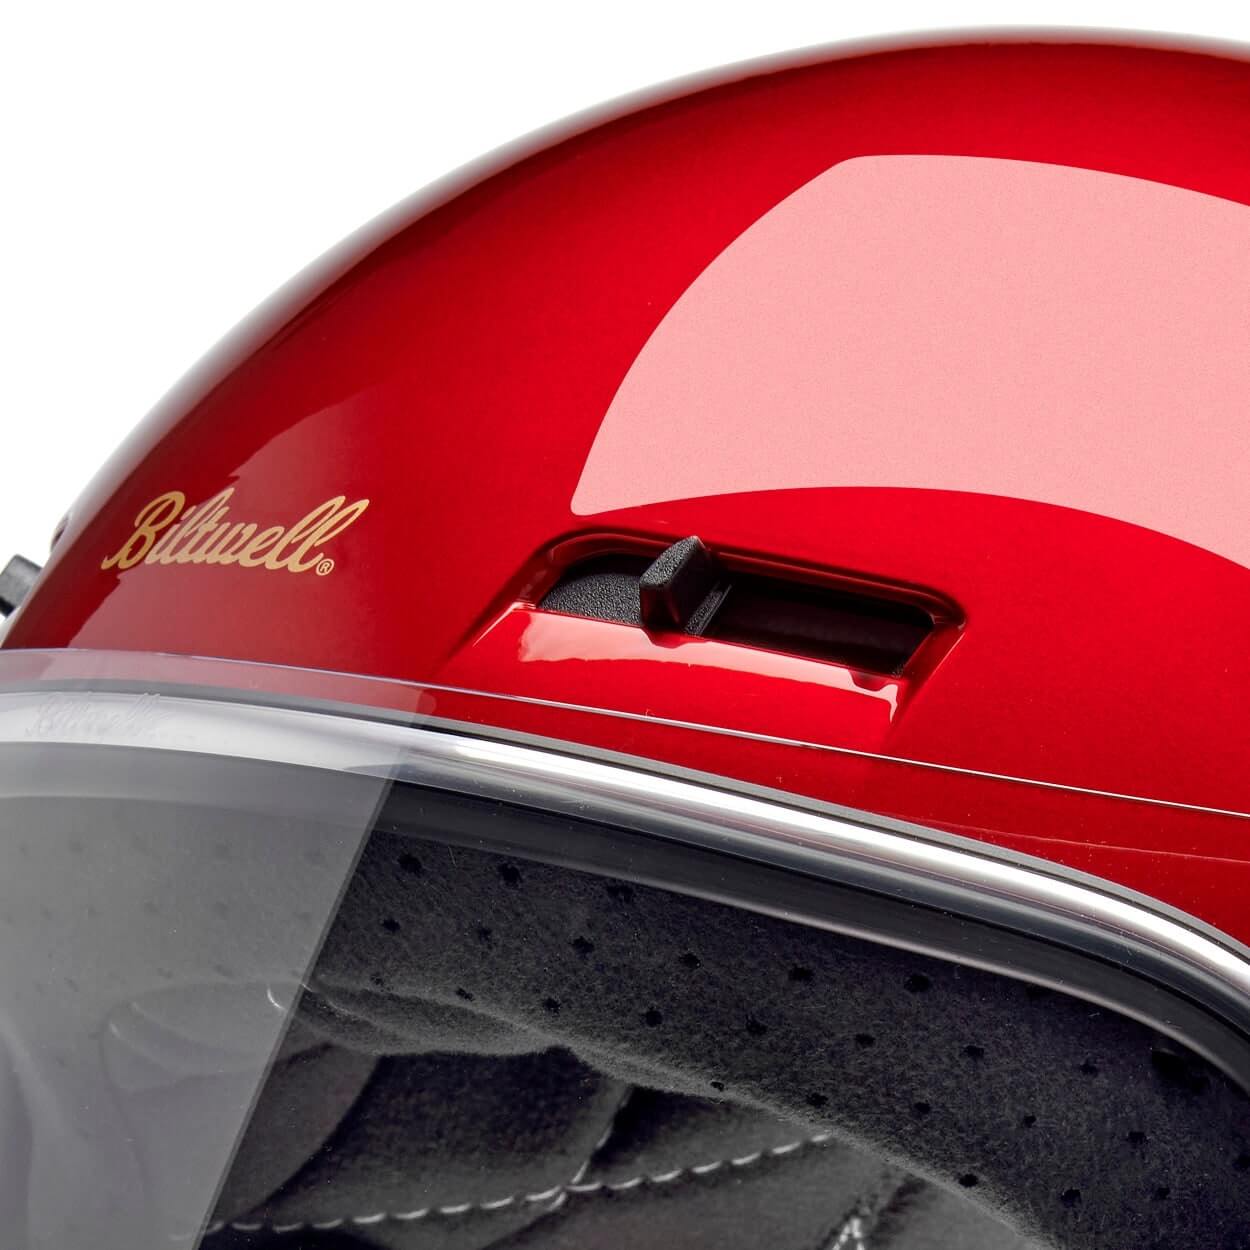 Biltwell Inc | Gringo SV Helmet - Metallic Cherry Red - XS - Motorcycle Helmet - Peak Moto